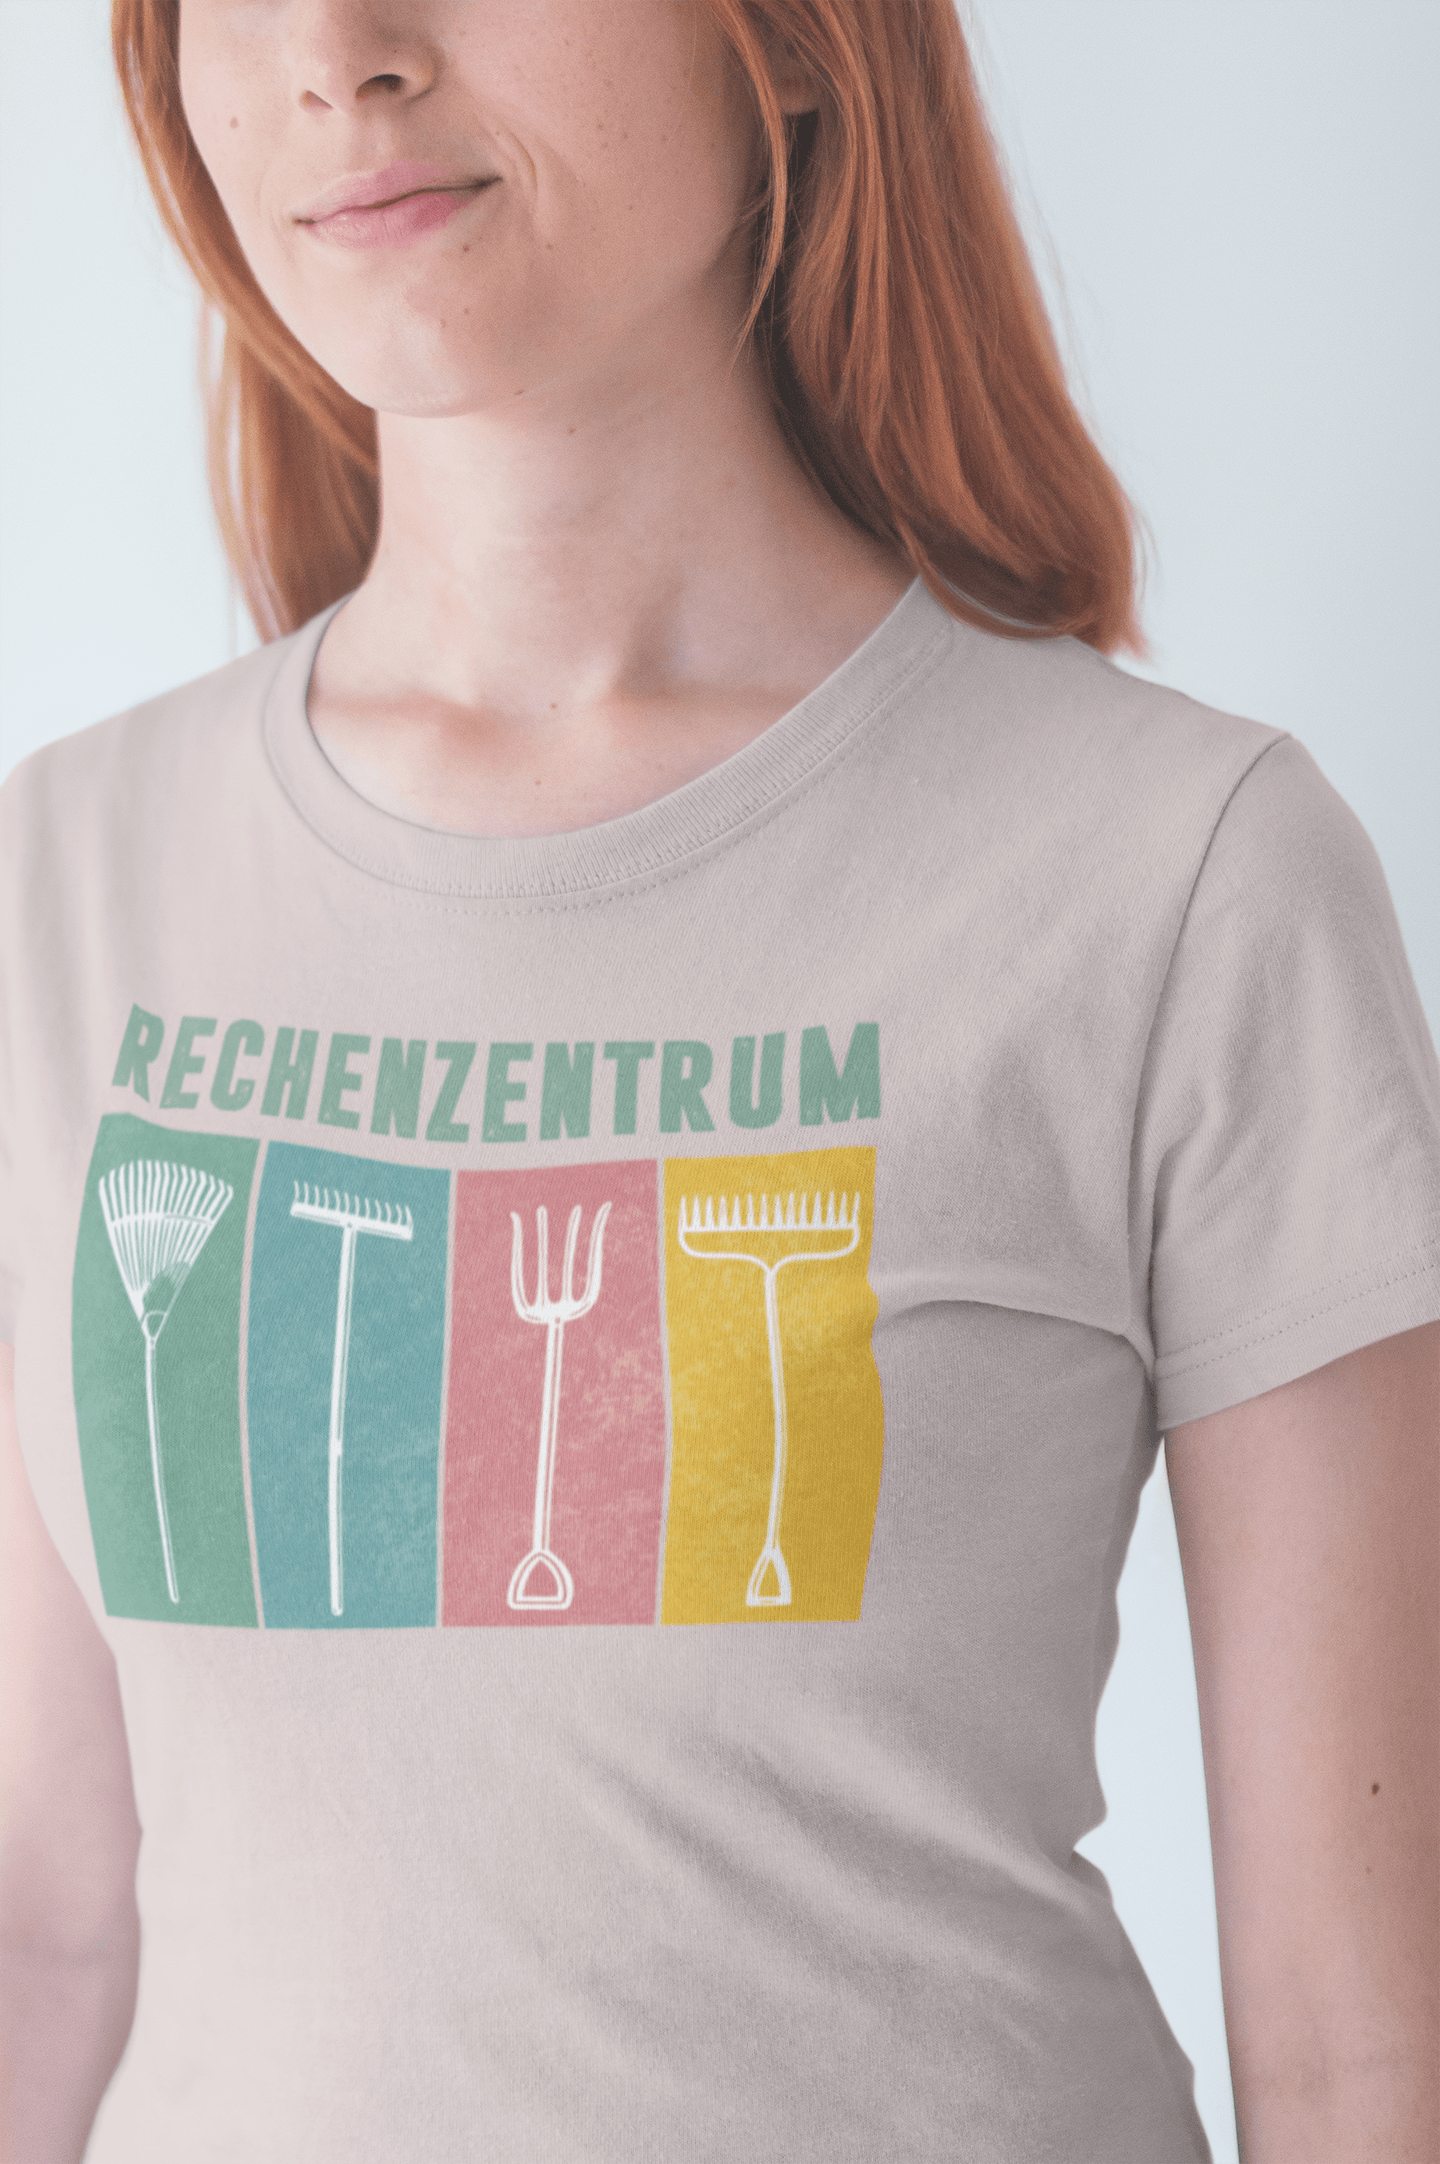 Rechenzentrum - Damen Premium Shirt - PflanzenFan